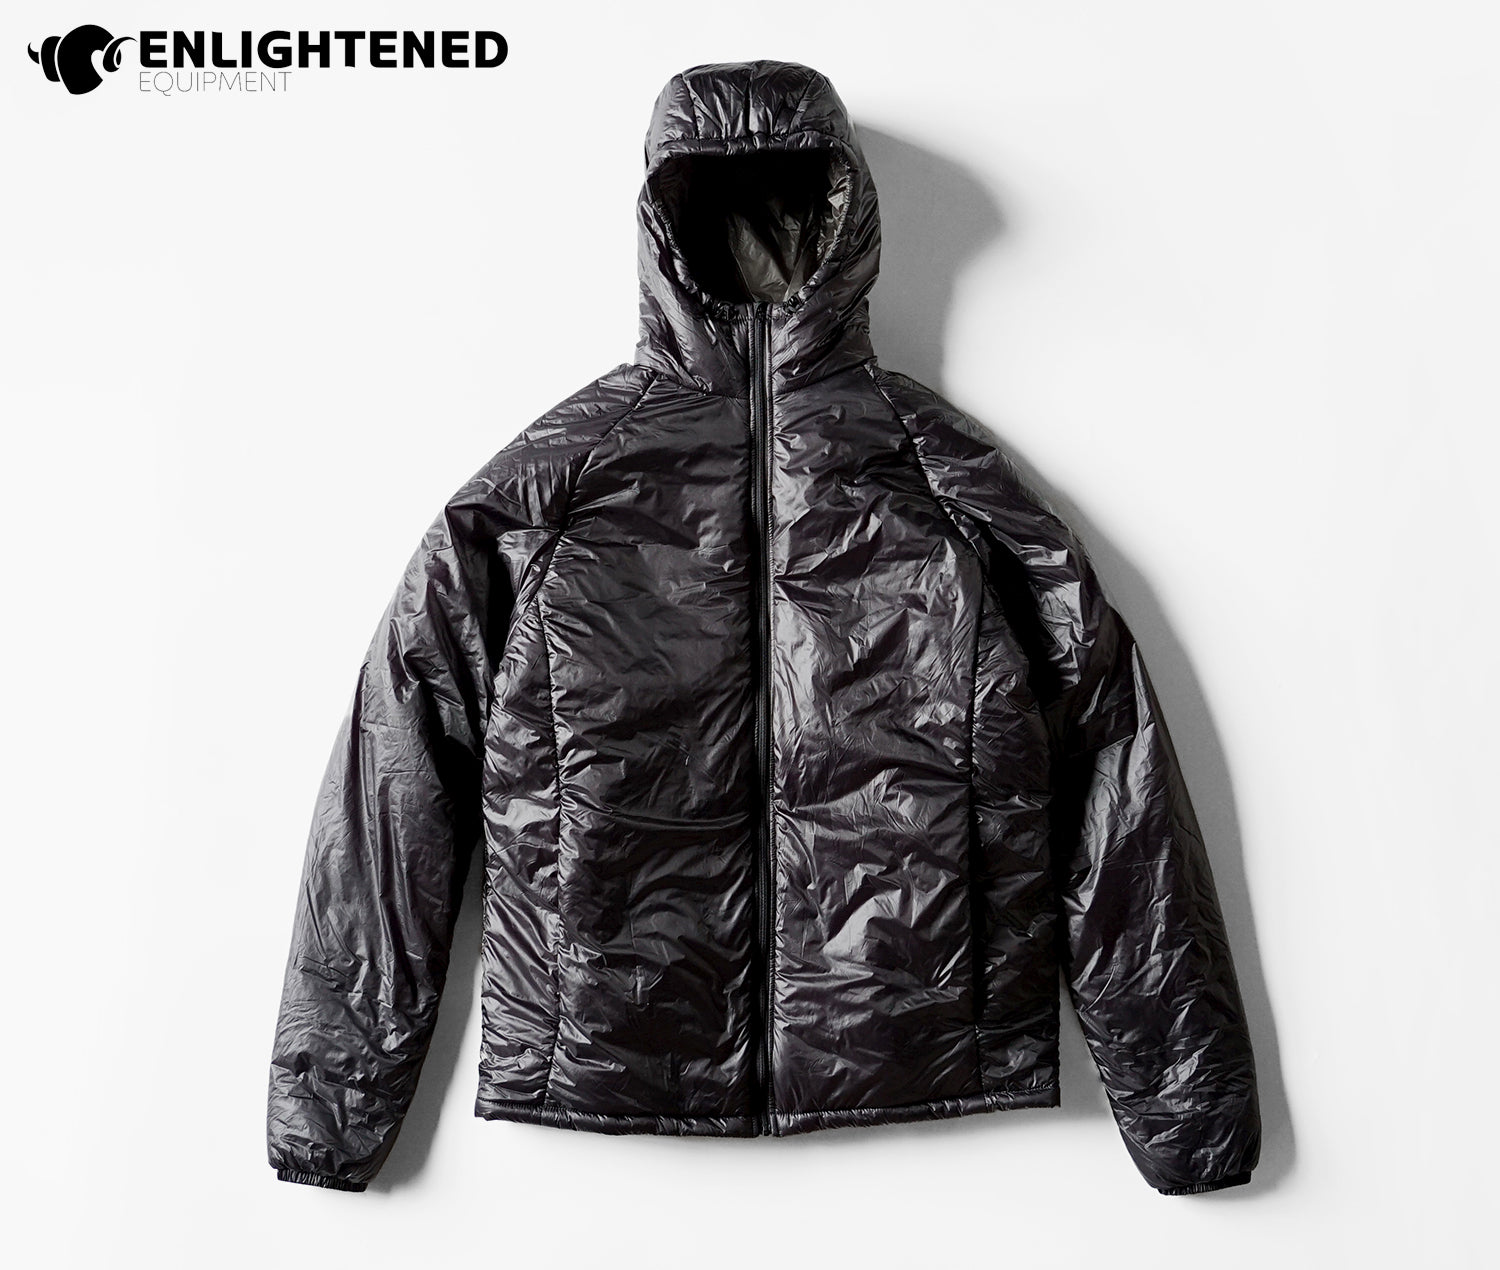 ENLIGHTENED EQUIPMENT / Men's Torrid APEX Jacket